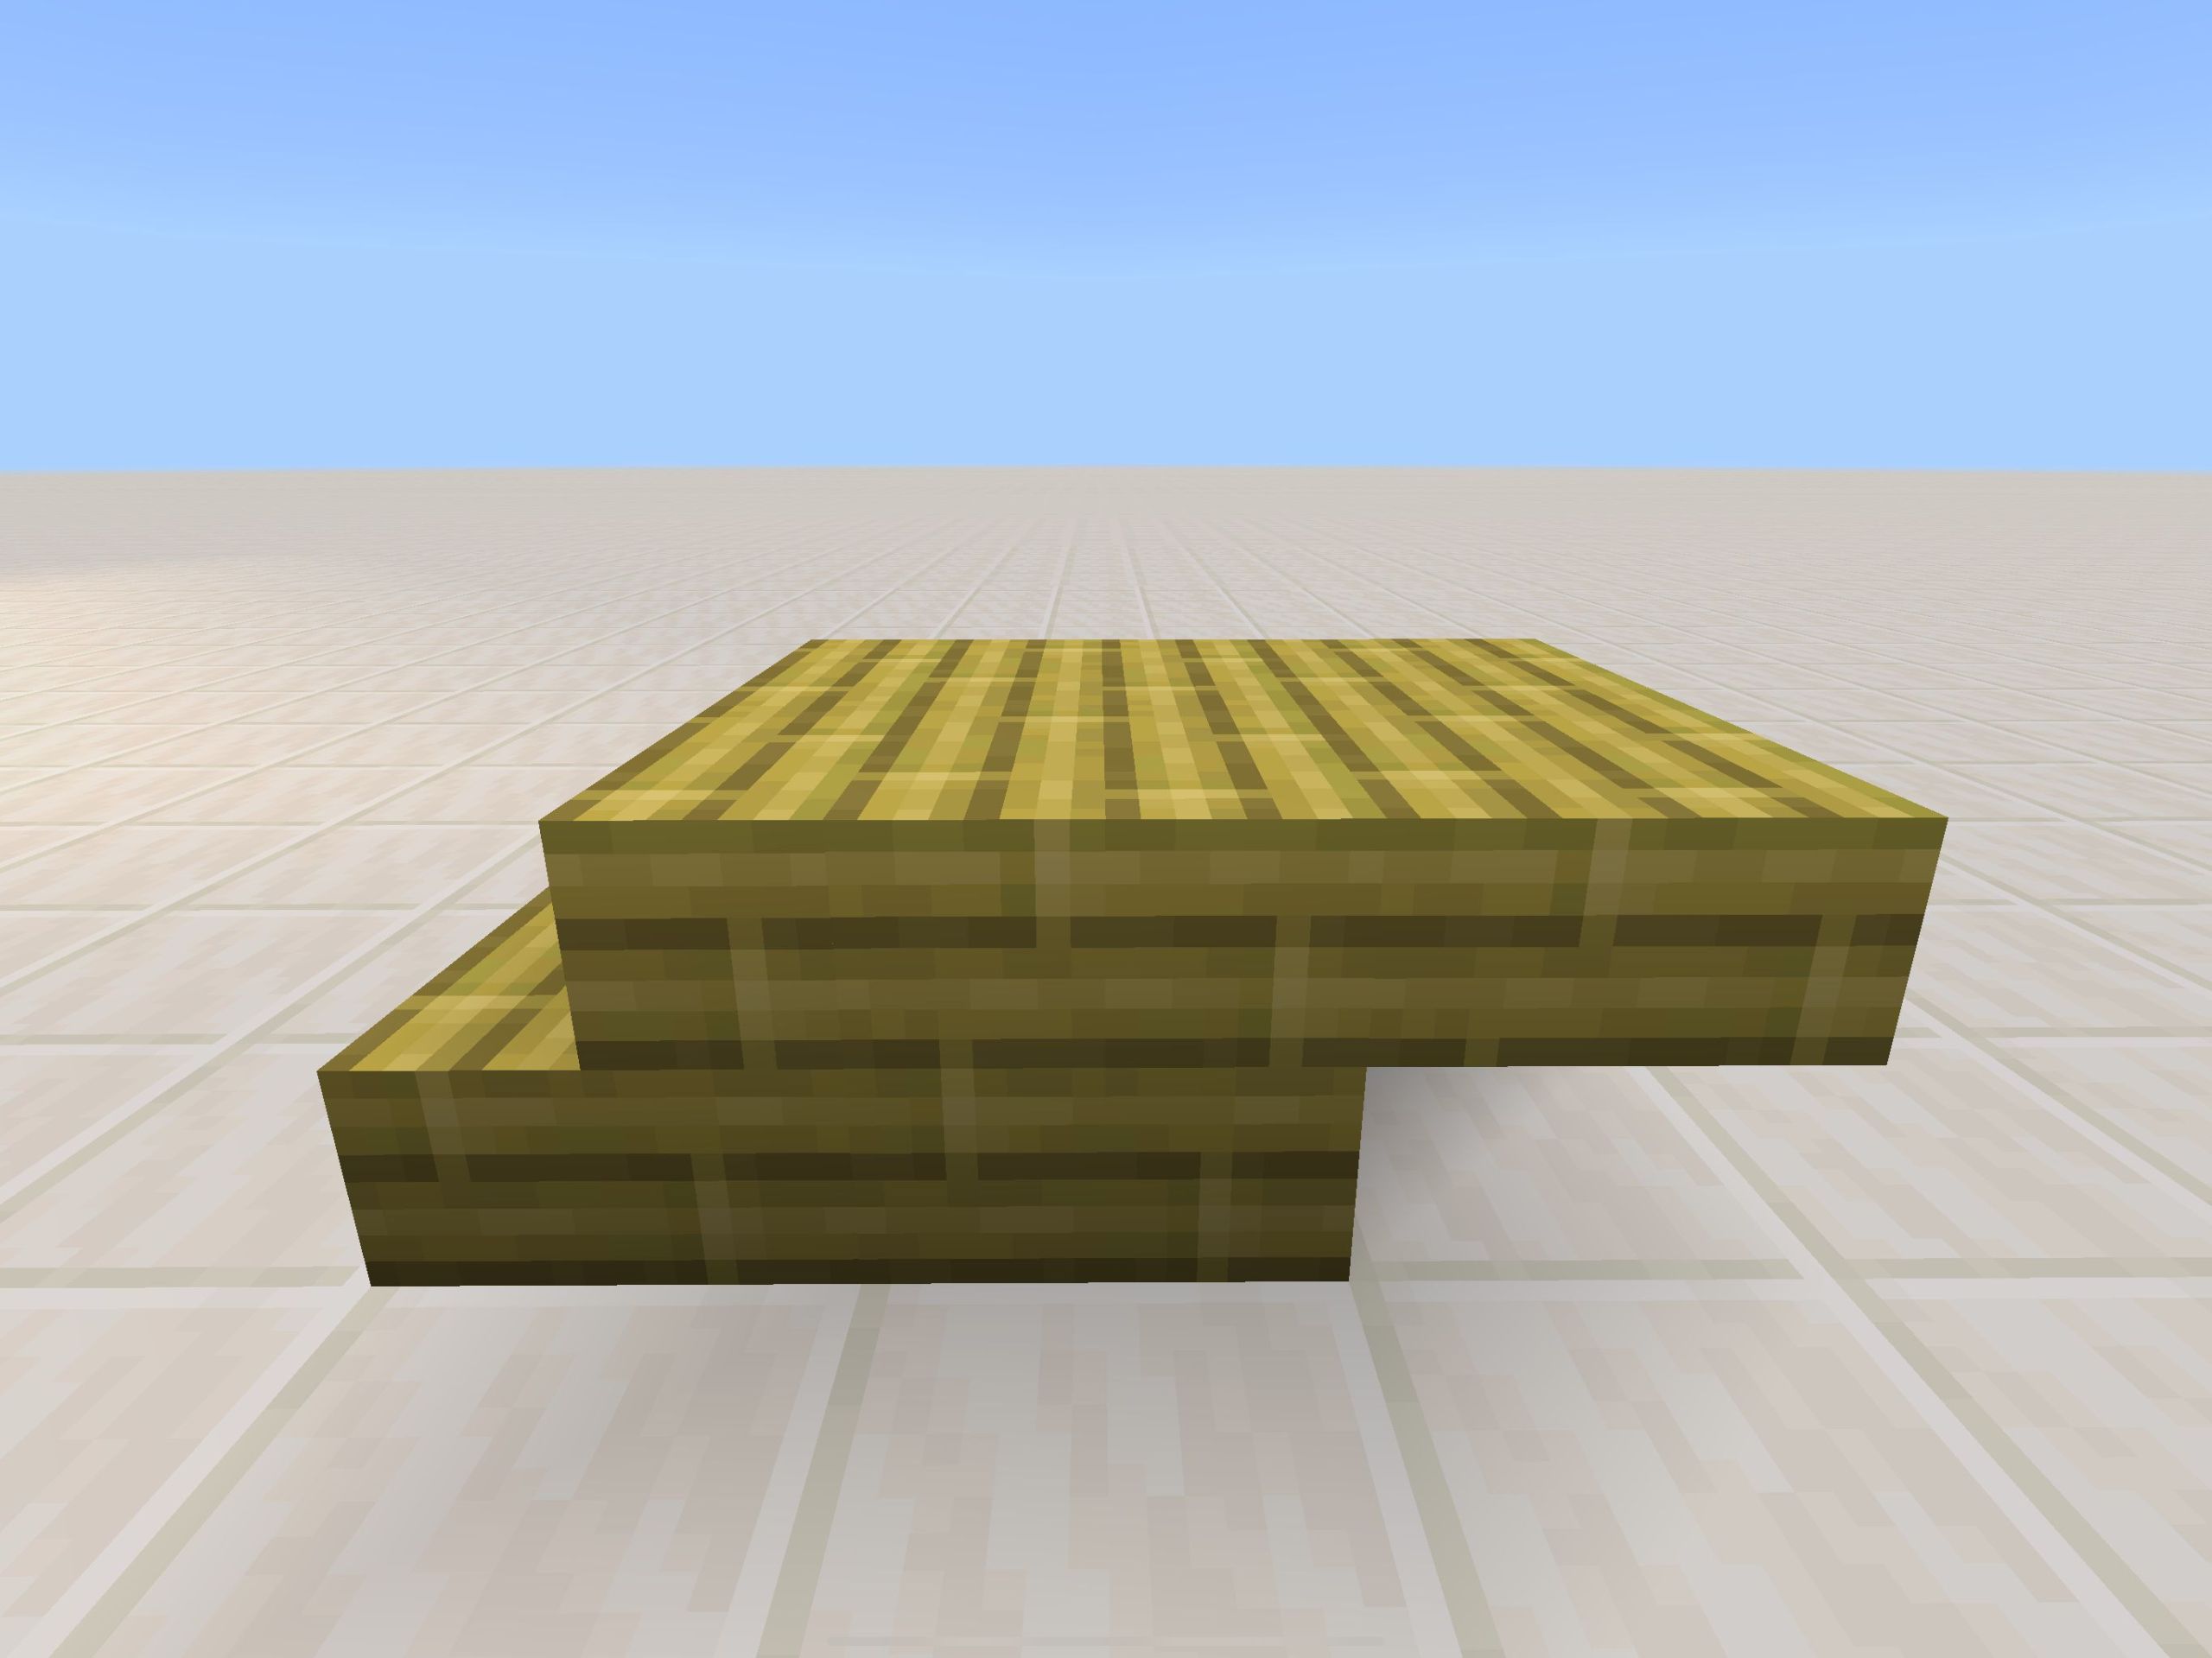 「竹の階段」→「竹の板材」→「竹のハーフブロック」の順で並べる